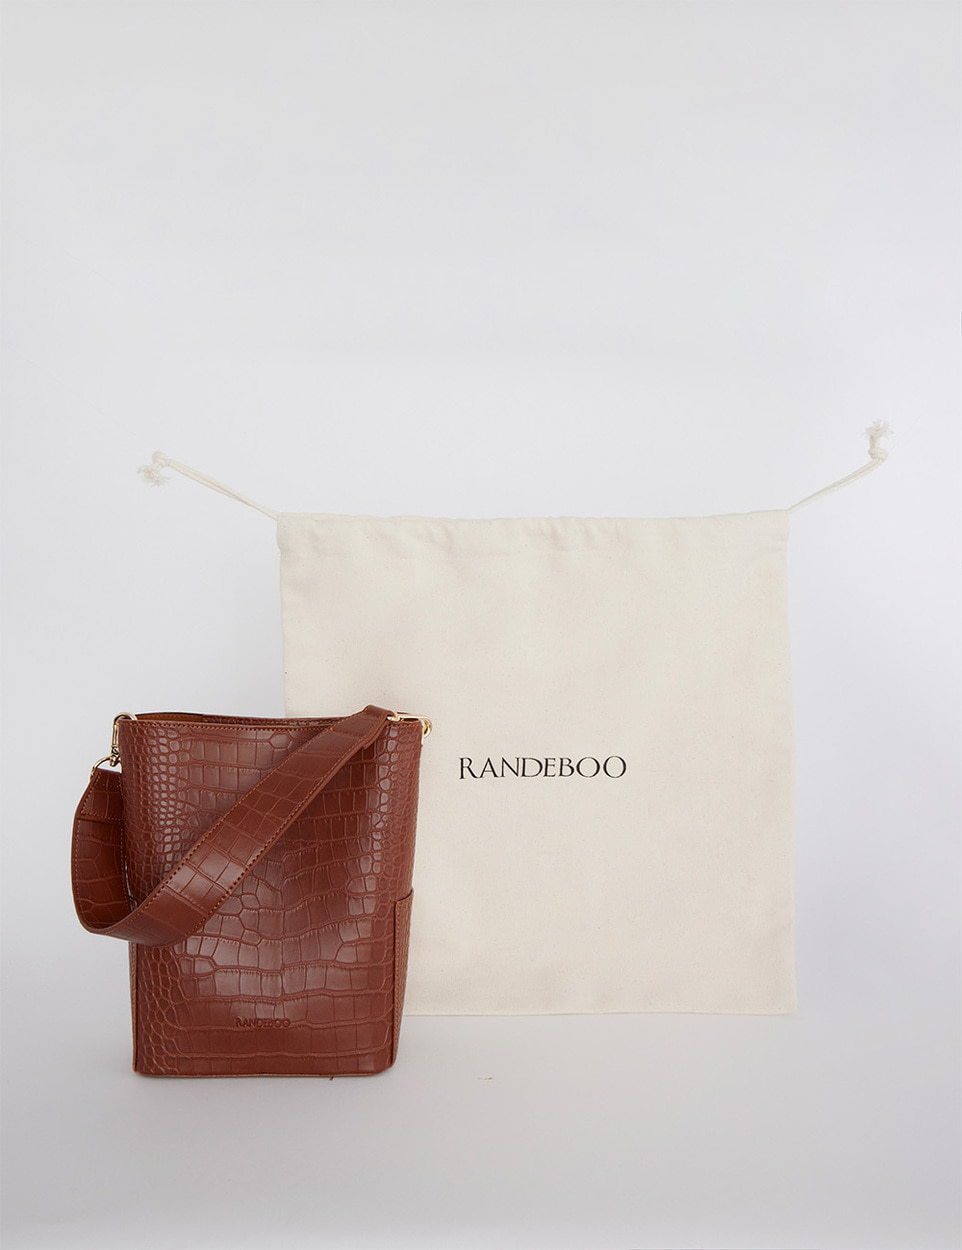 Croco bucket bag - RANDEBOO